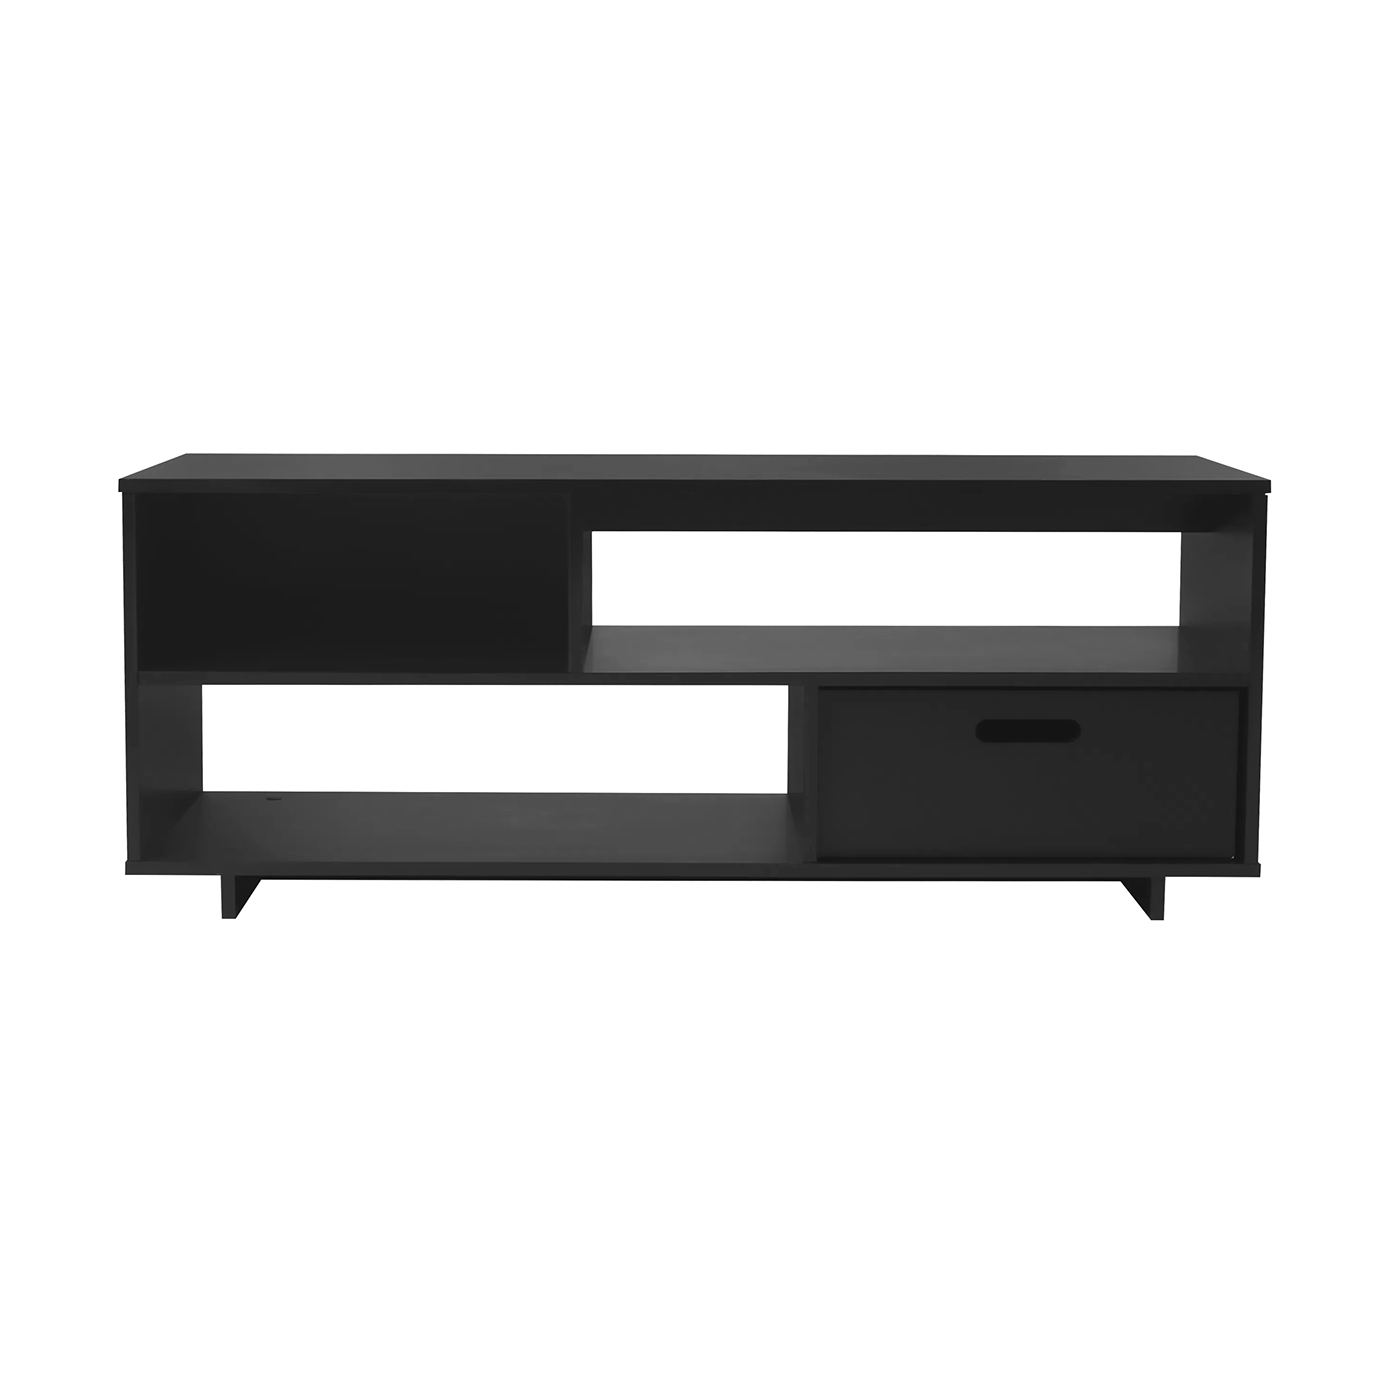 Tv unit interior design  furniture design diseño tokstok móvel mobiliario diseño industrial designer